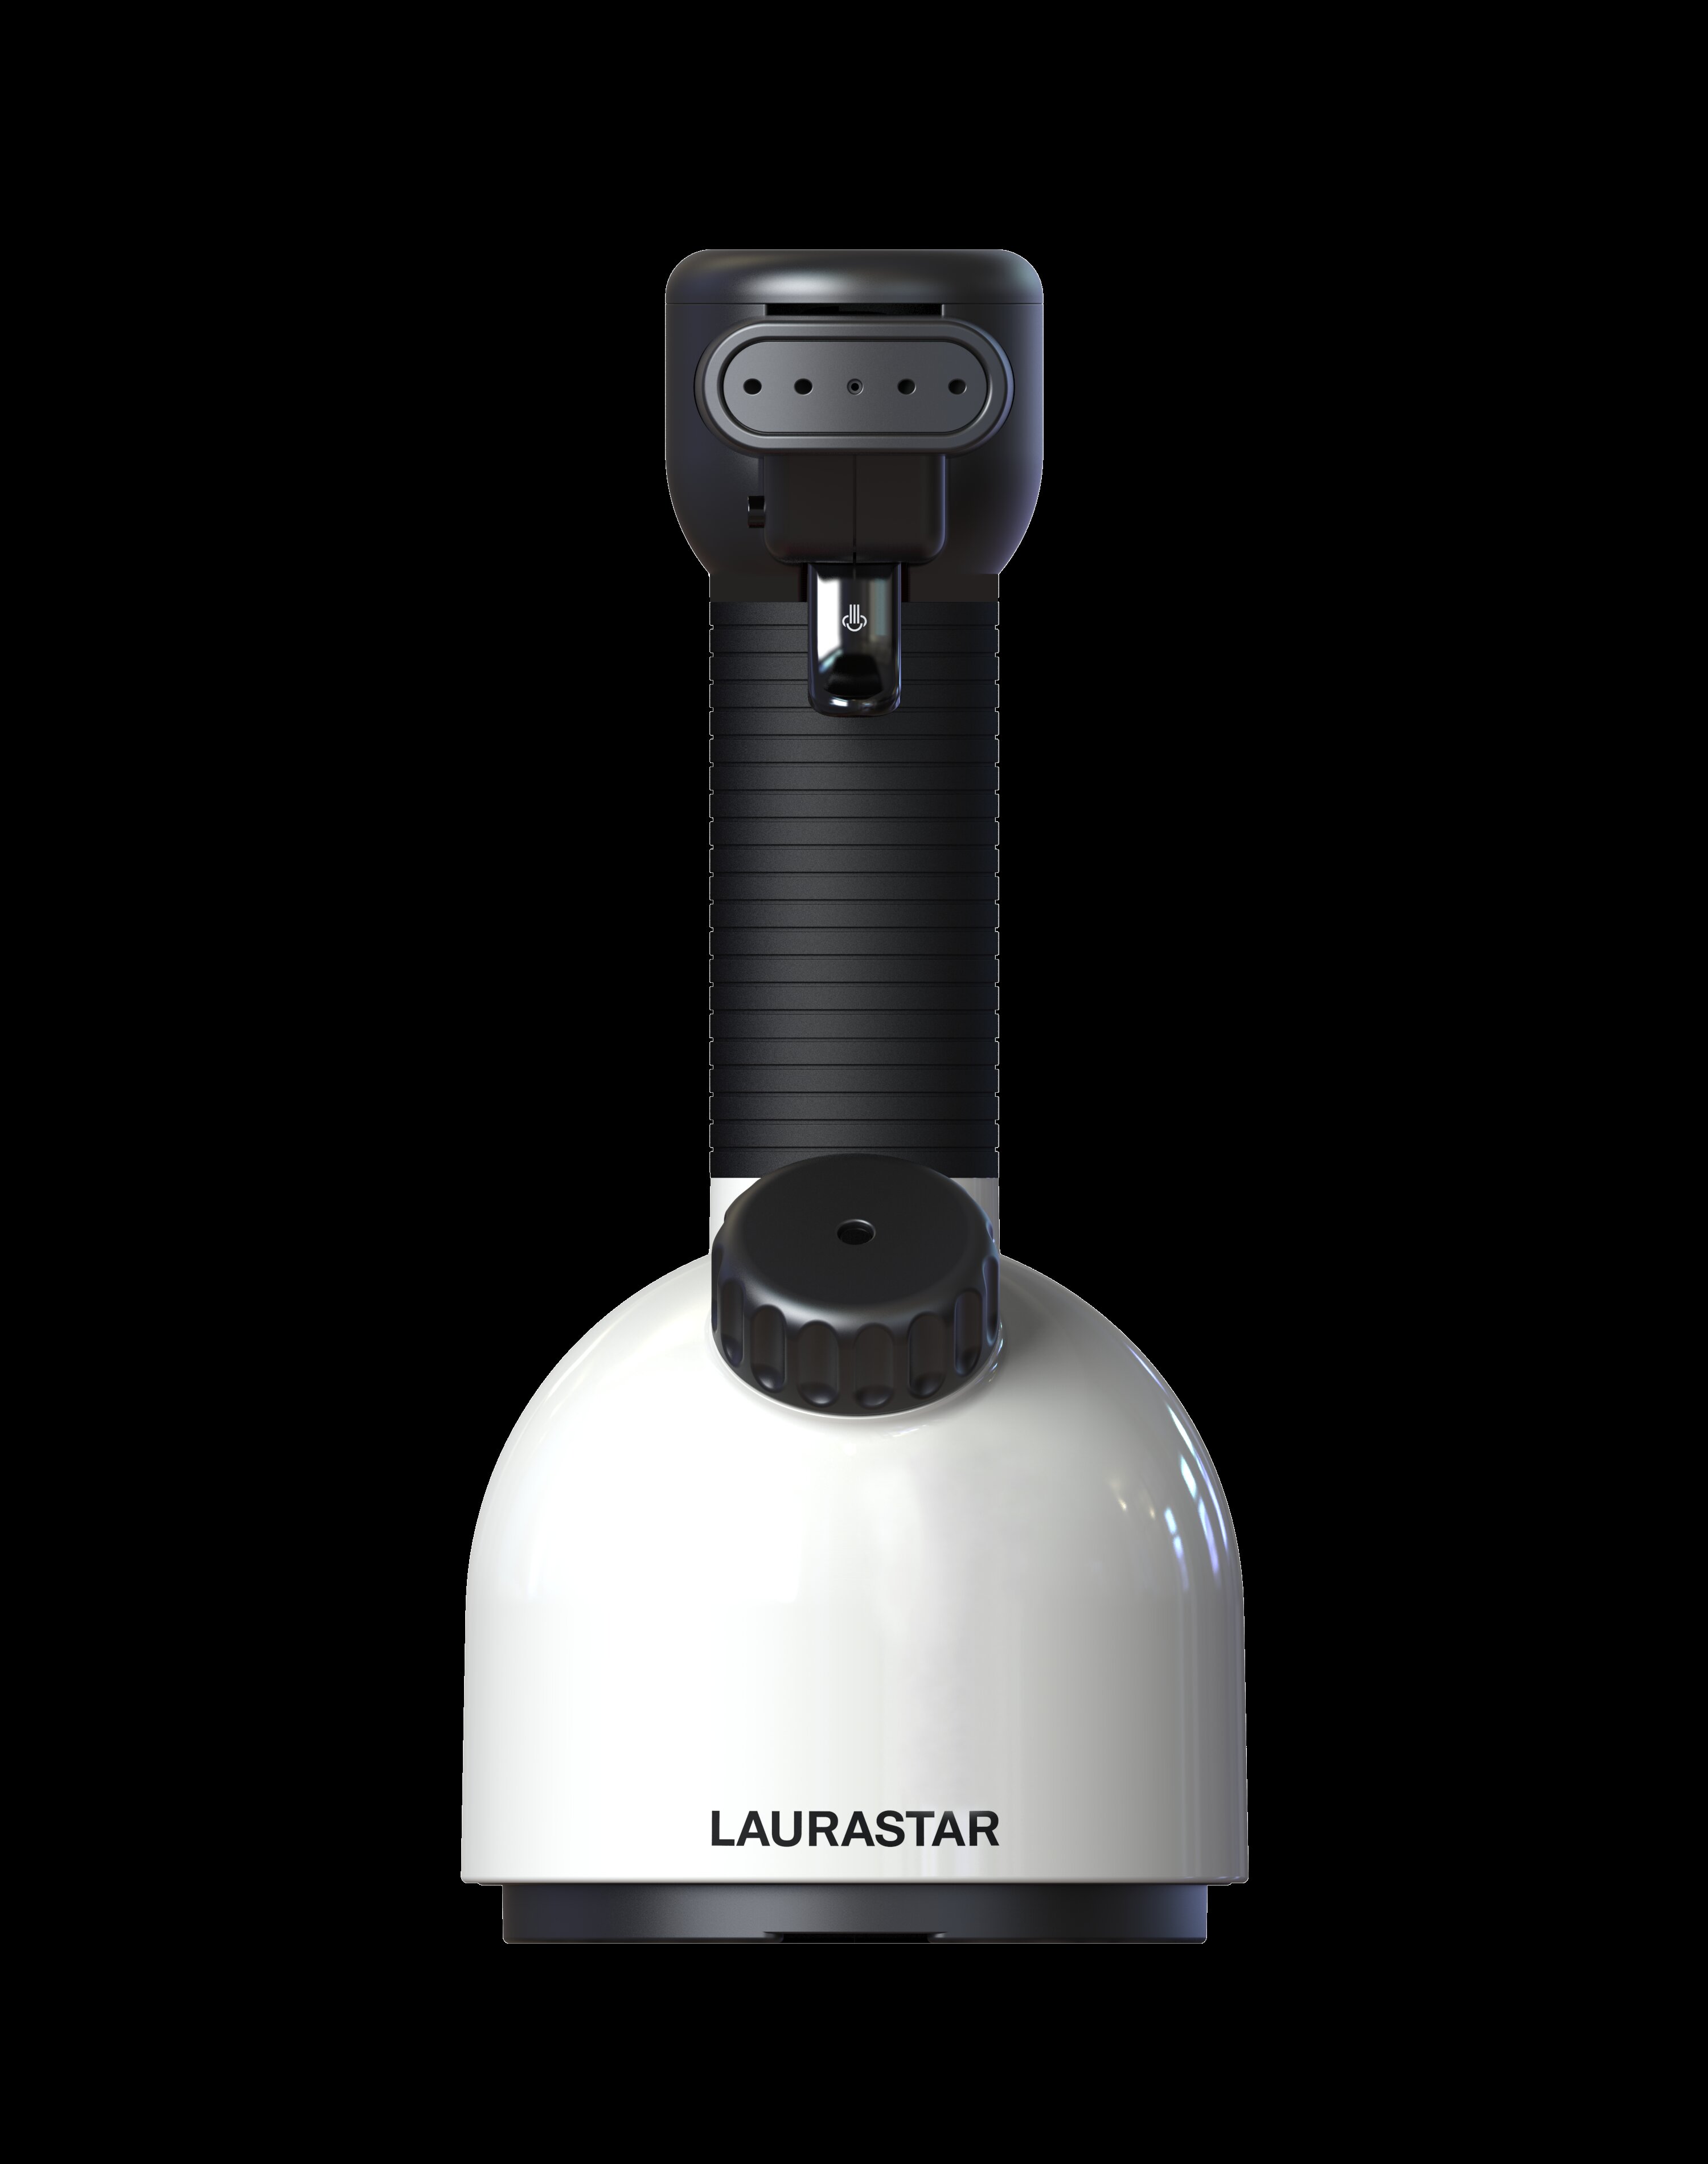 Laurastar 1600 Watt Wayfair Steamer | & Reviews Handheld